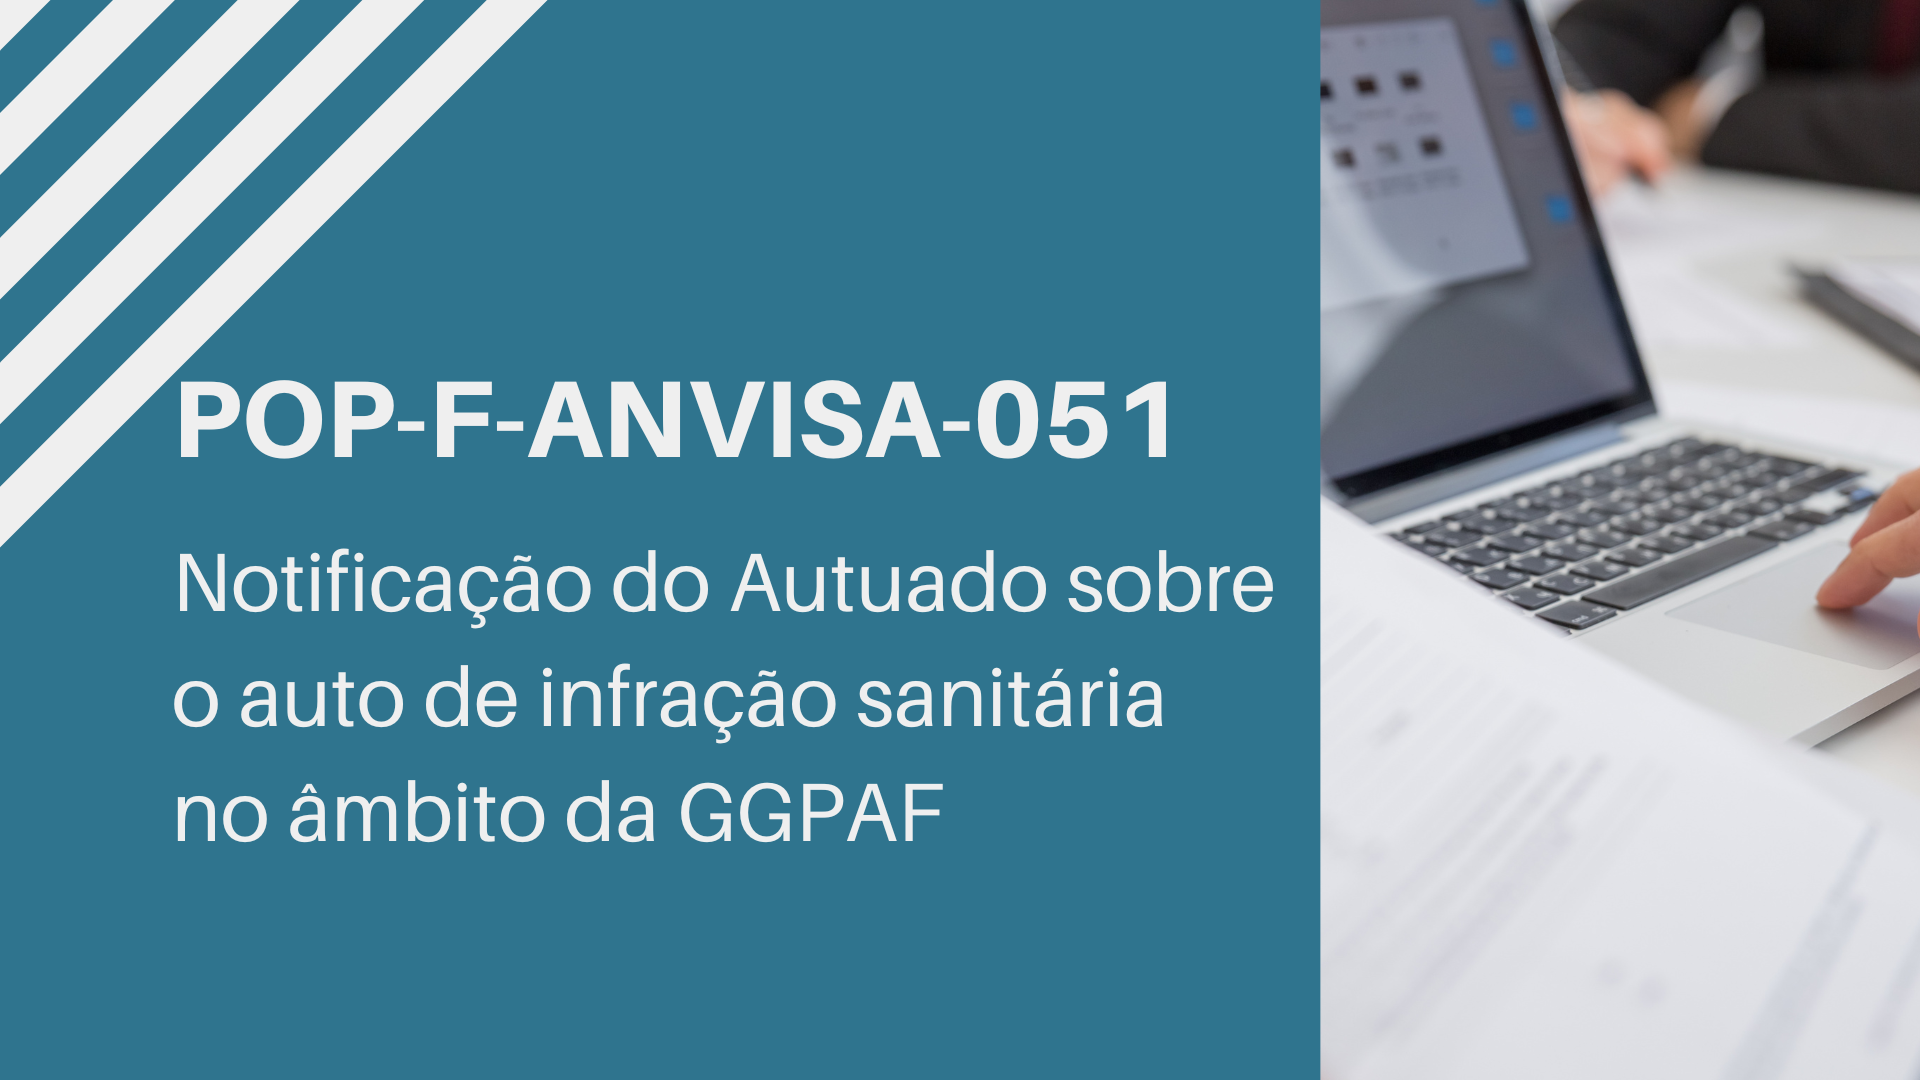 POP-F-ANVISA-051 - NOTIFICAÇÃO DO AUTUADO SOBRE O AUTO DE INFRAÇÃO SANITÁRIA NO ÂMBITO DA GGPAF